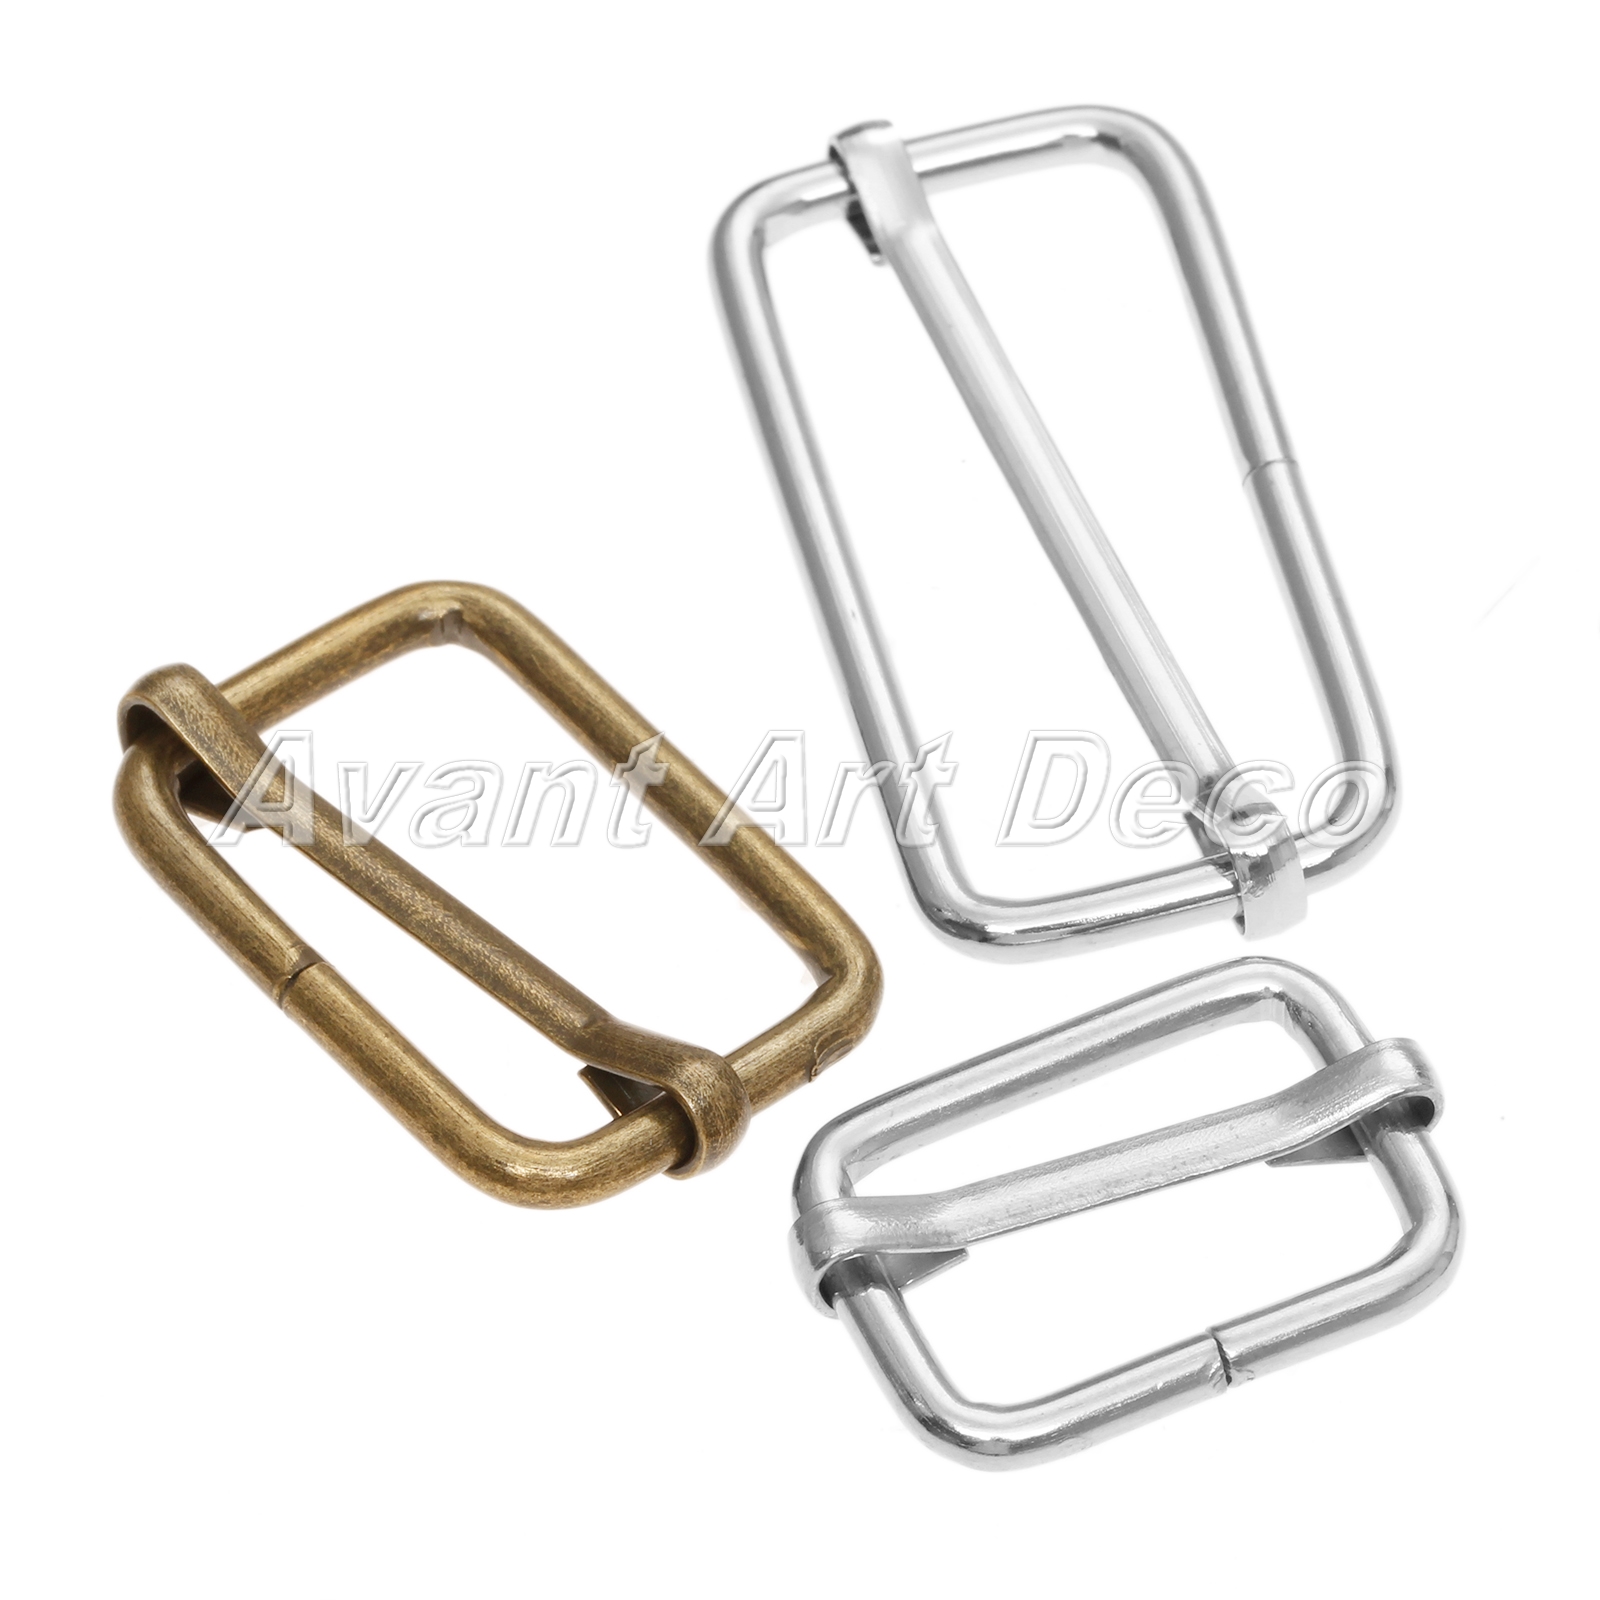 20Pcs Metal Webbing Bag Buckle Slide Adjustor Adjustable Square Ring Buckles 